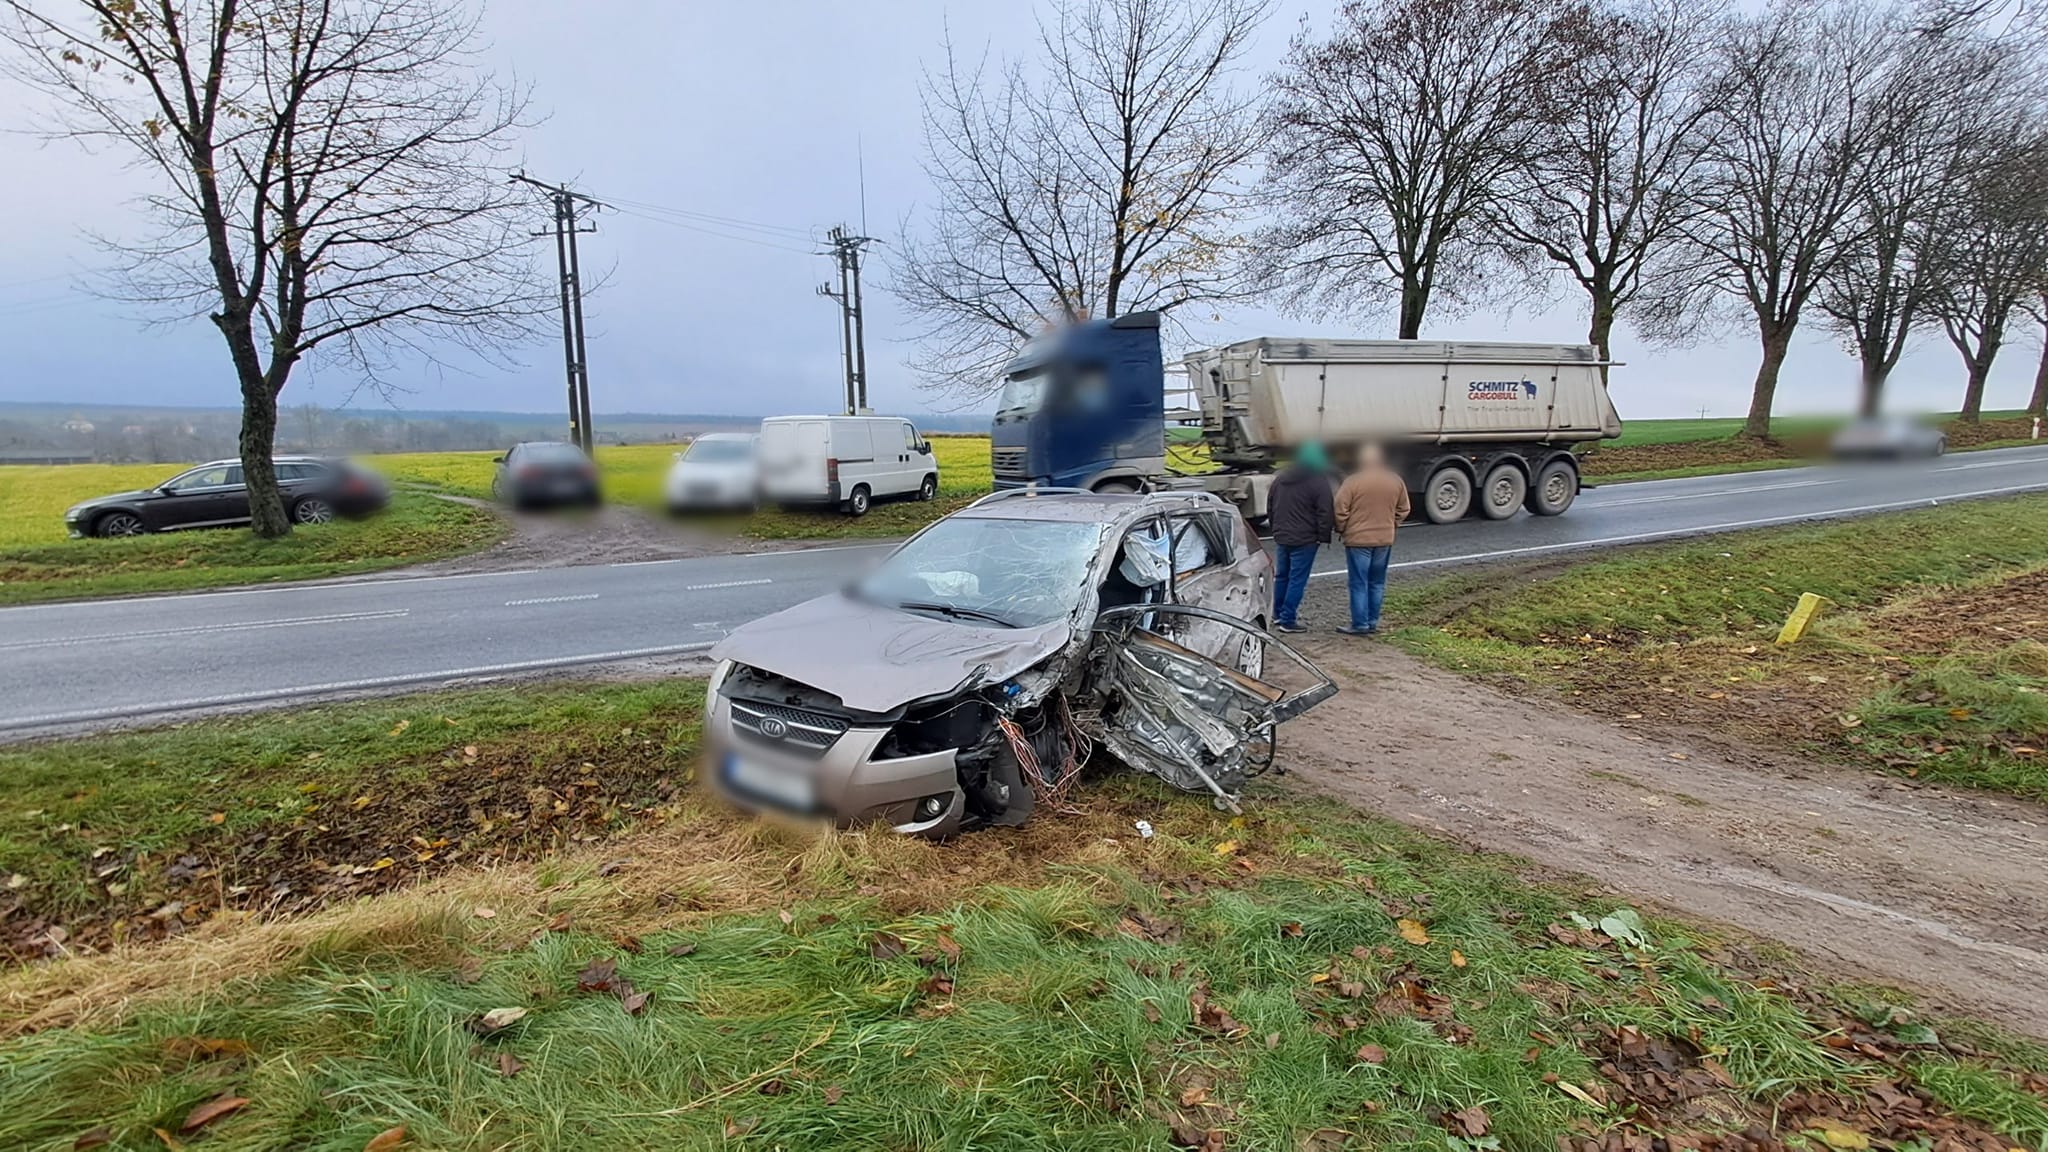 dramat na drodze. tir rozbił osobówkę, ale zginął kierowca ciężarówki!